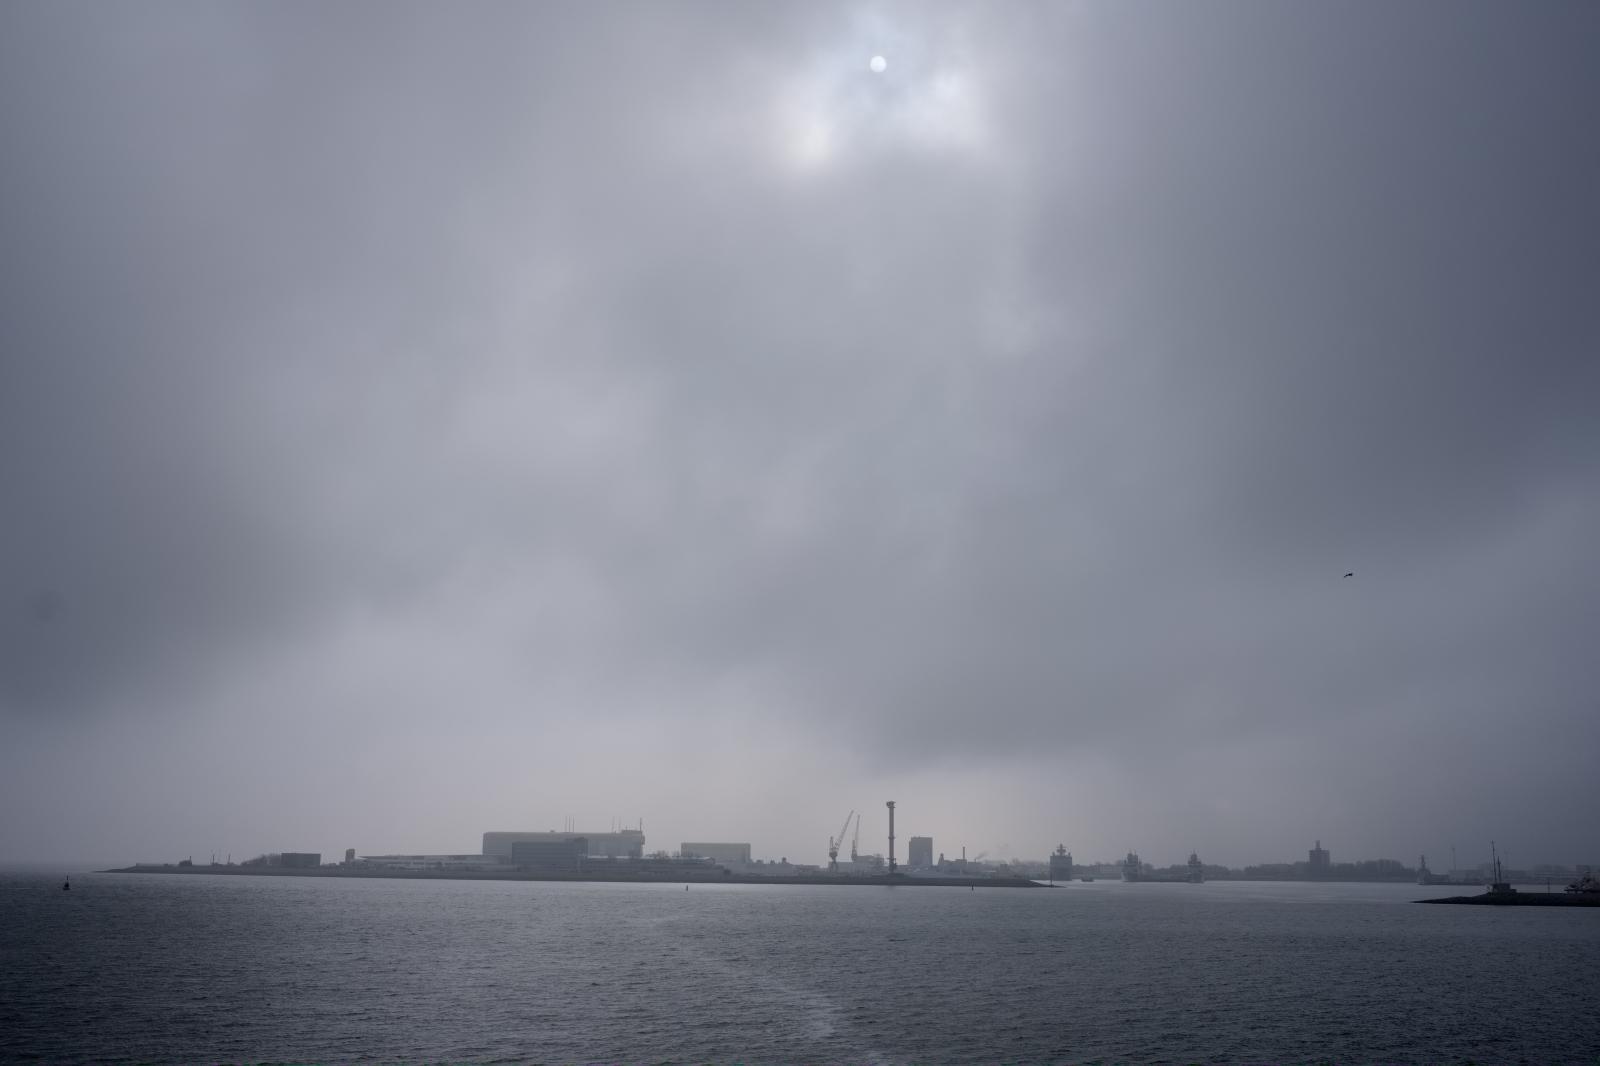 Den Helder Harbor | Buy this image